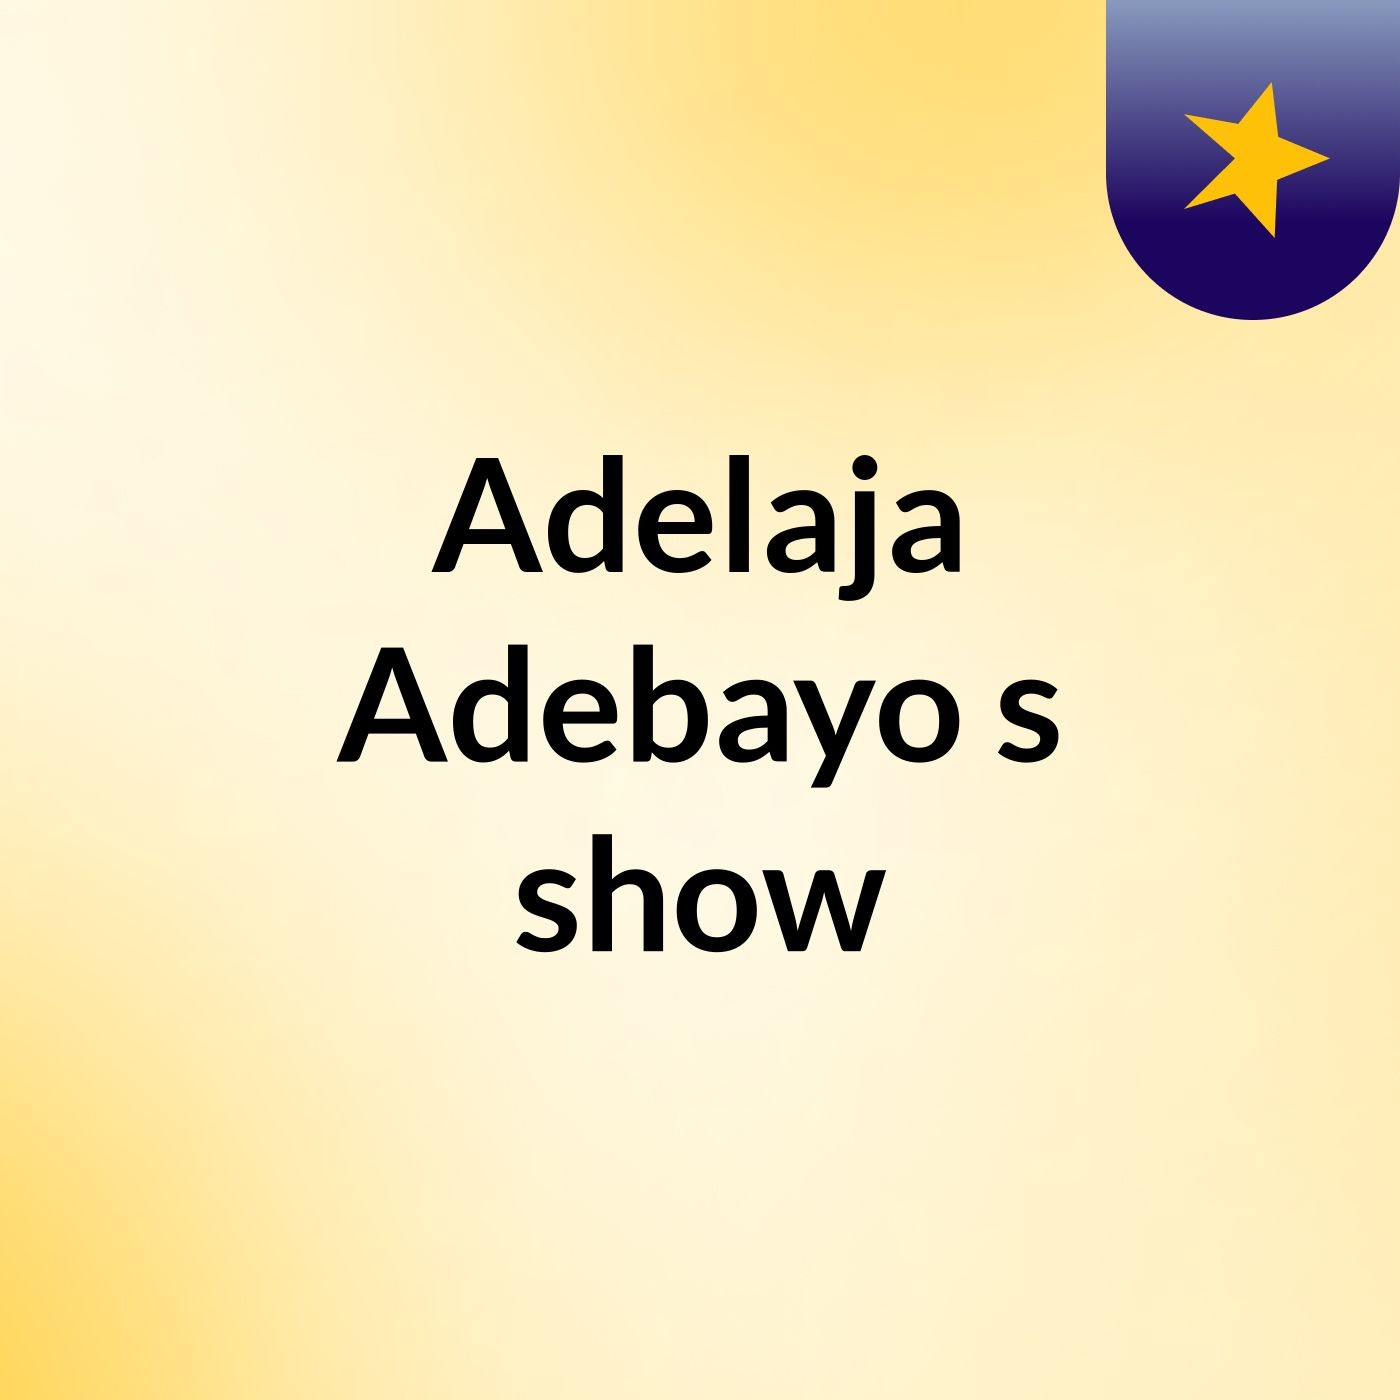 Adelaja Adebayo's show